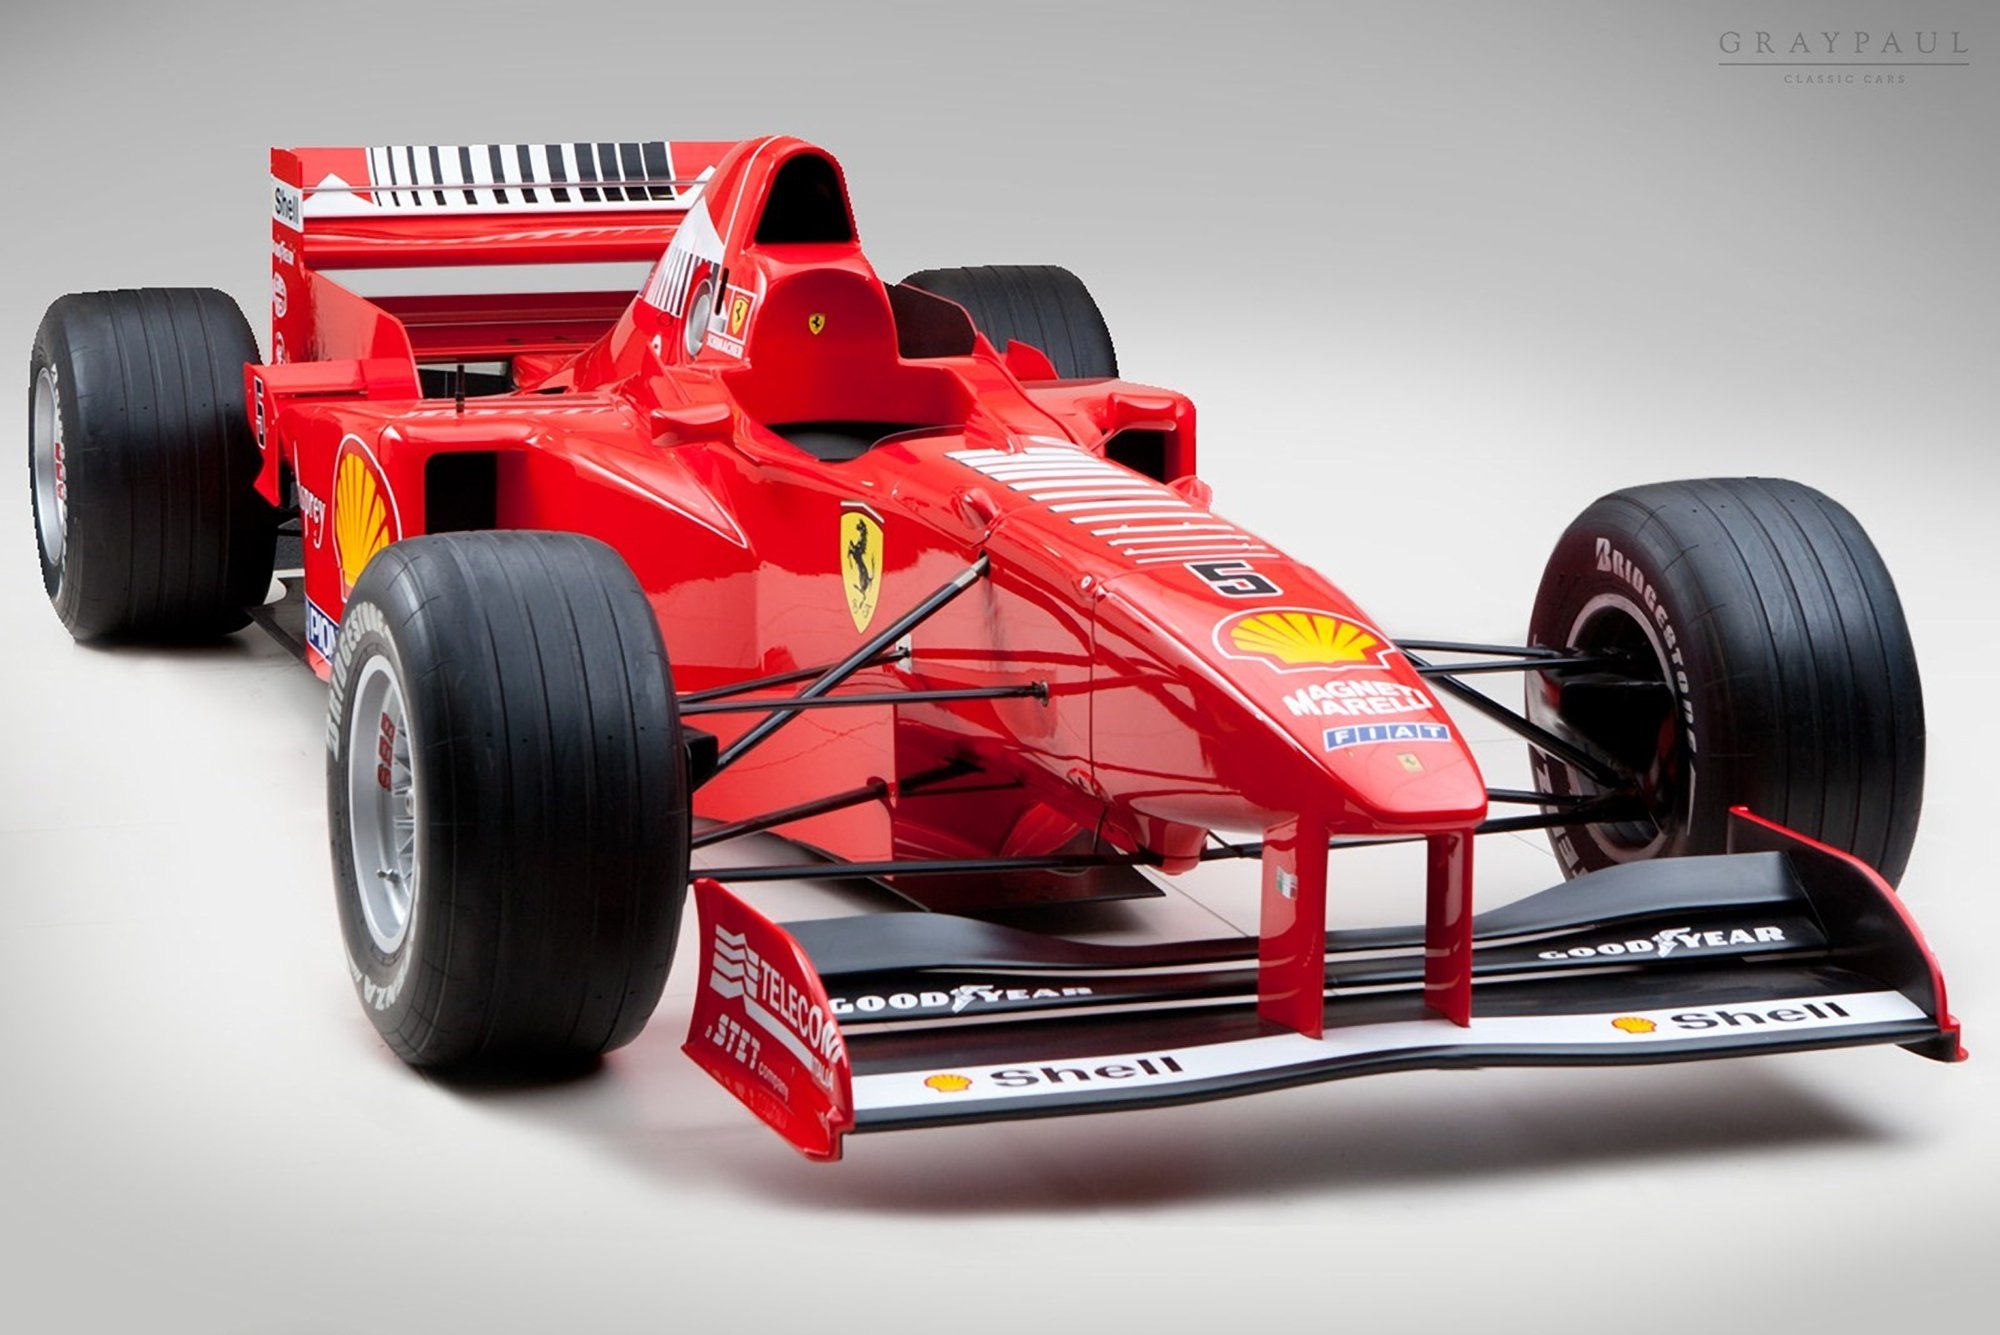 Ф 1 2000. Ferrari f2000 f1. Ferrari f310. Ferrari f1 f310. Ferrari f310b 1997.